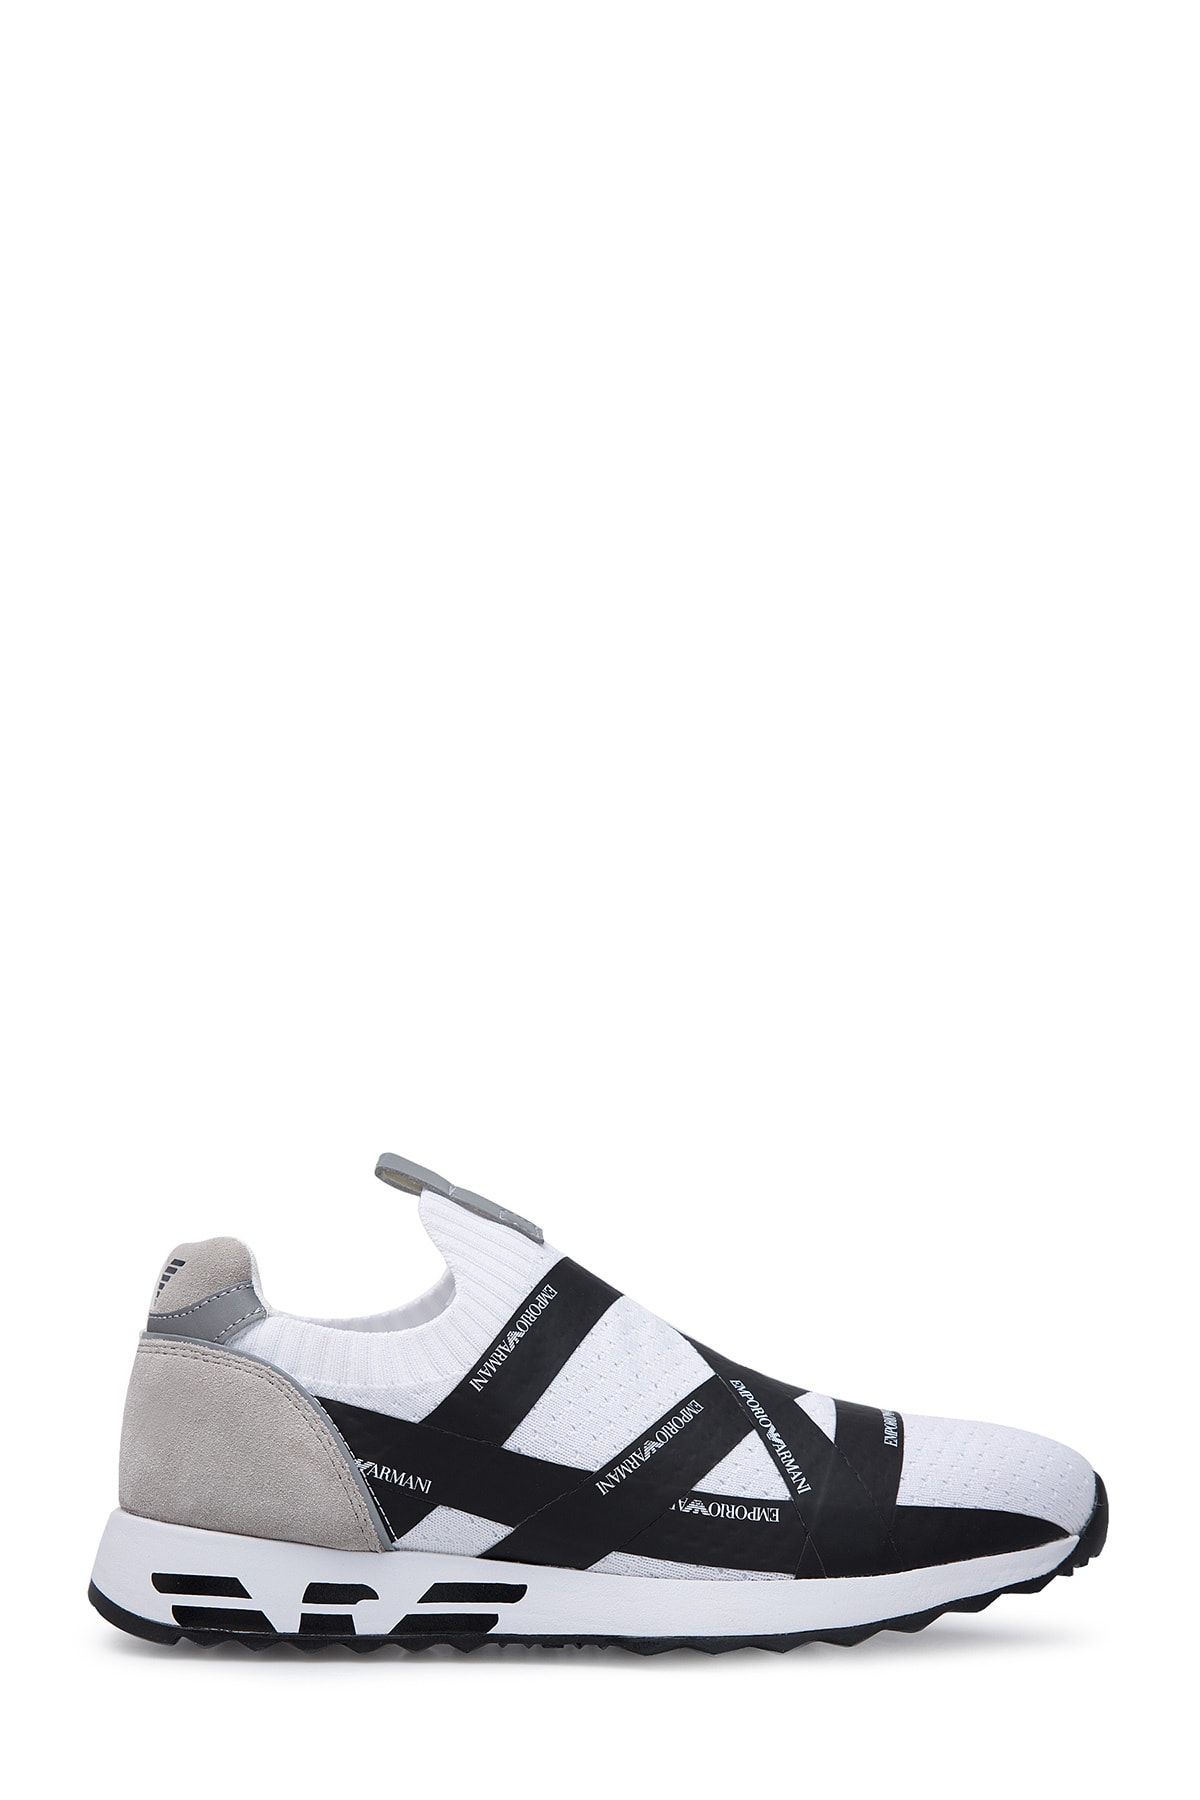 Emporio Armani Erkek Beyaz Ayakkabı X4x253 Xl692 D237